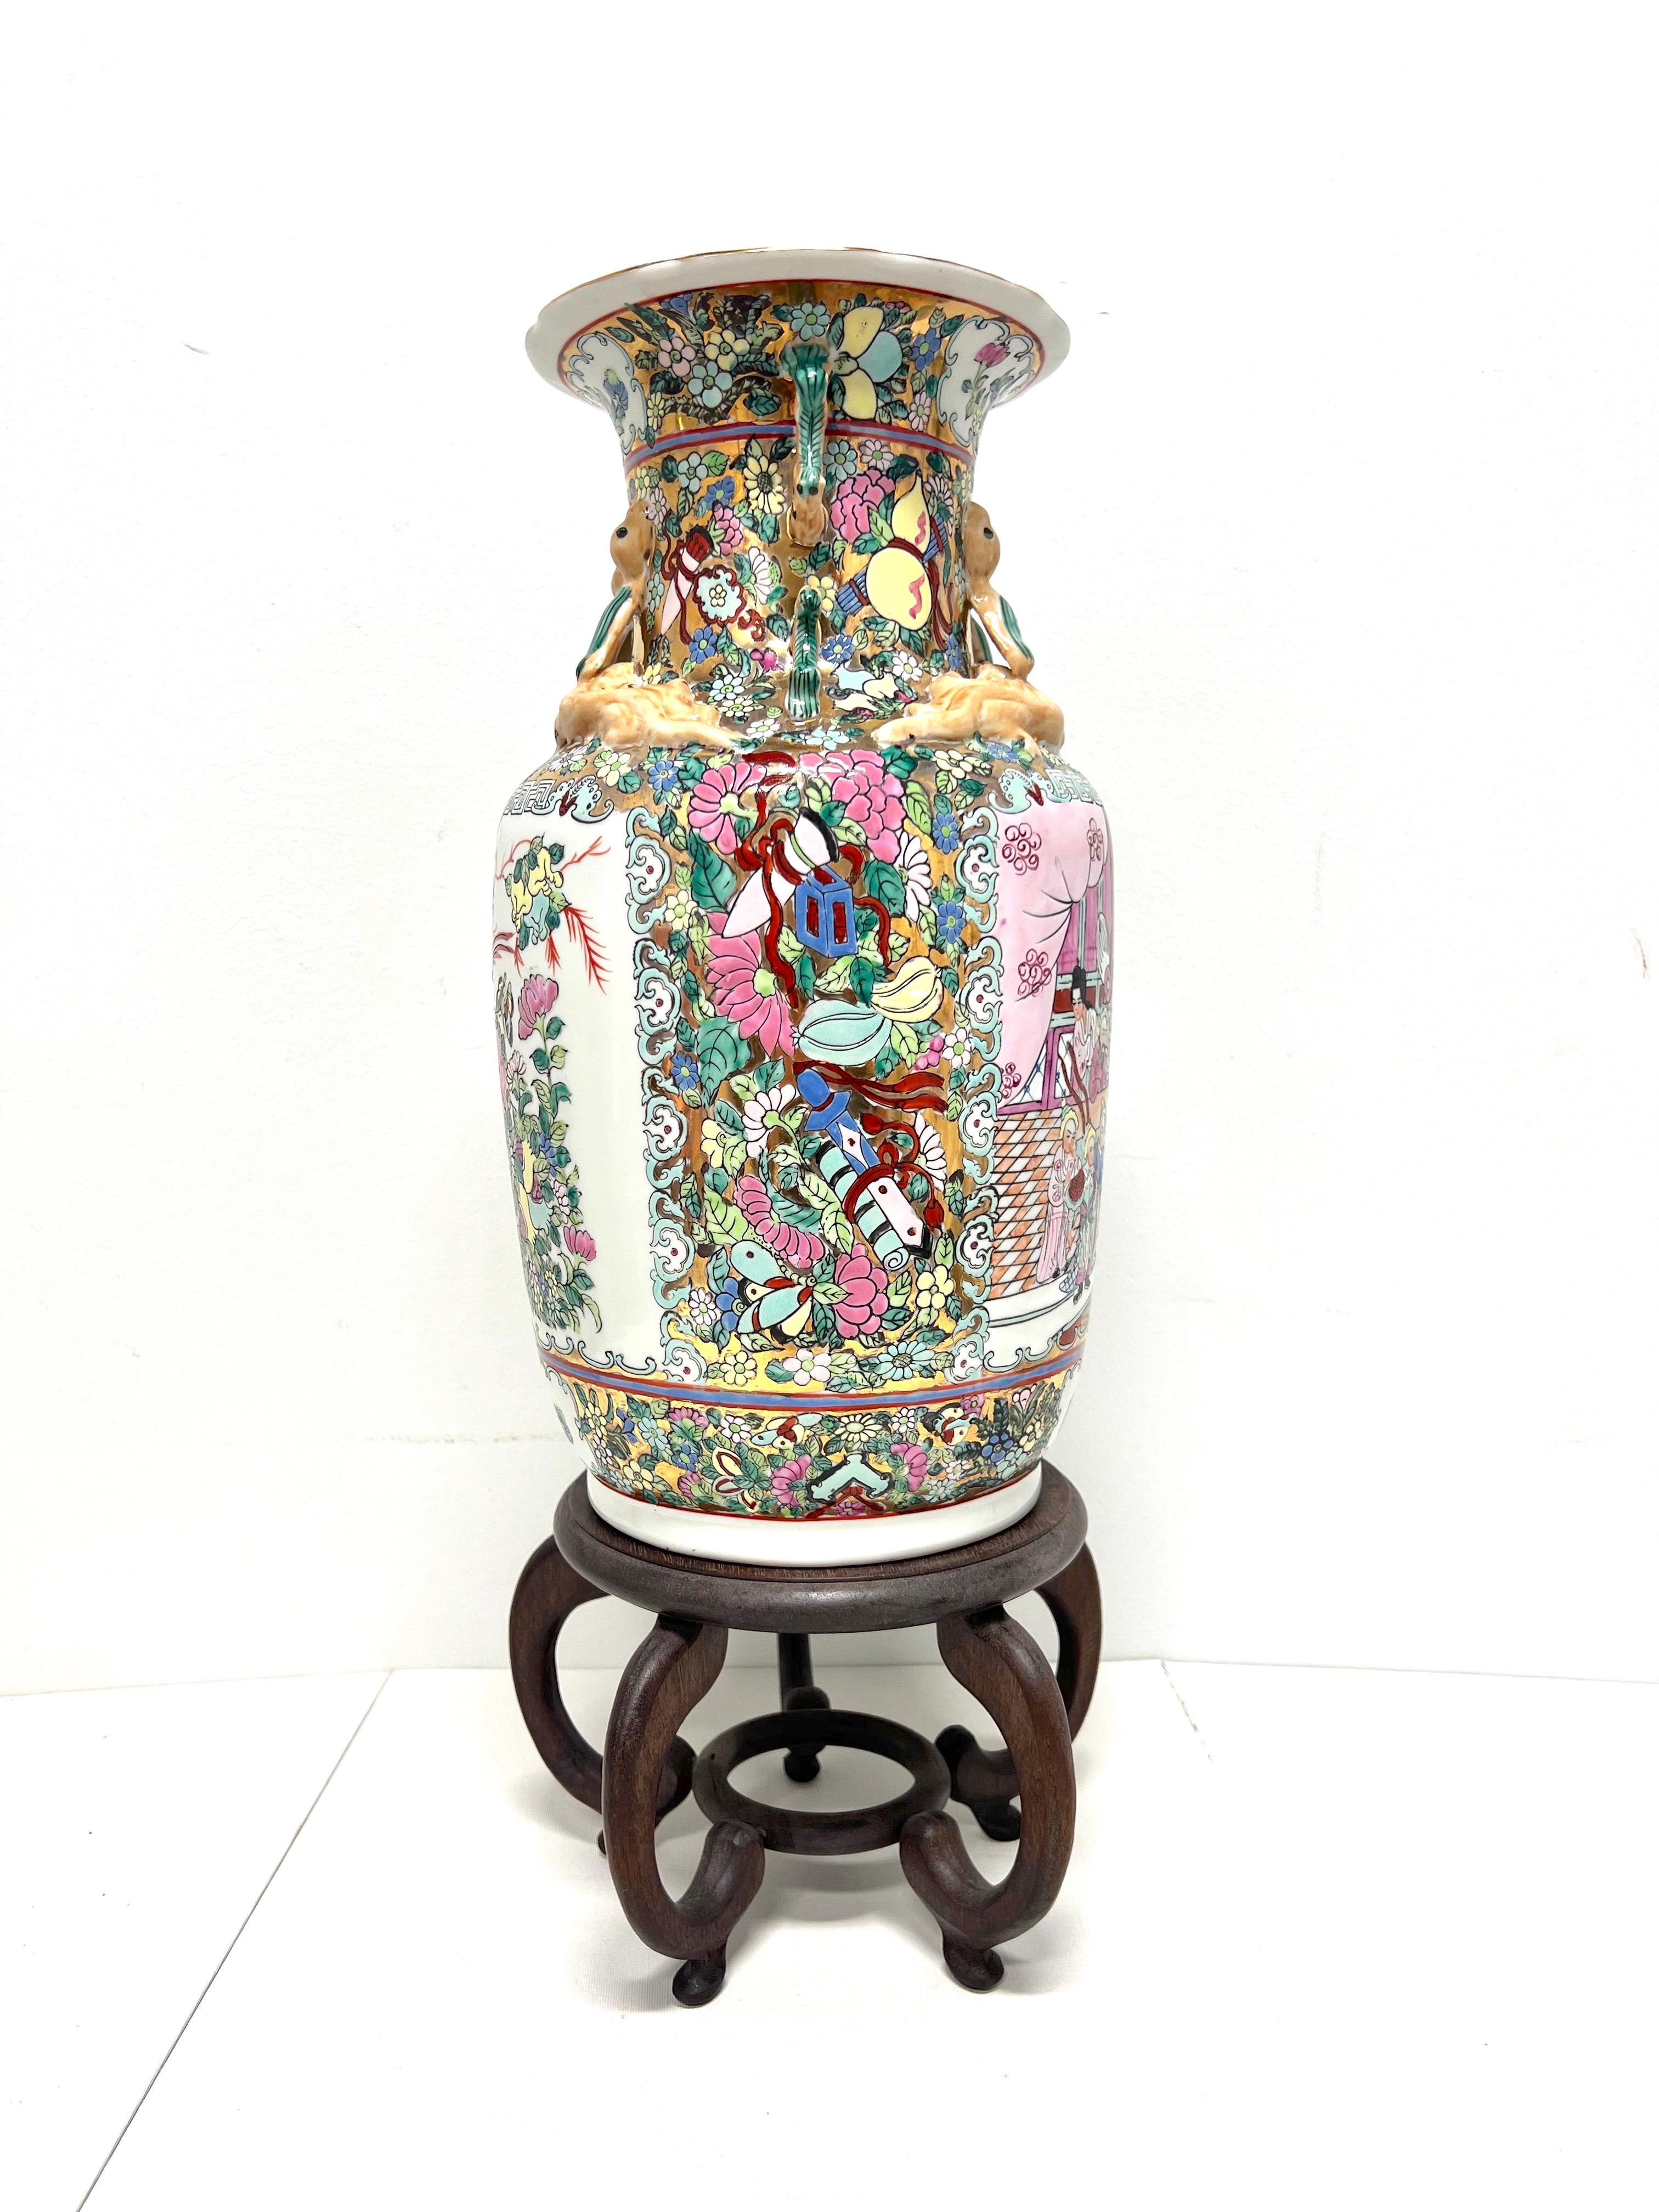 Dekorative Porzellanvase im asiatischen Stil aus der Mitte des 20. Jahrhunderts mit Ständer, ohne Marke. Eine schöne mehrfarbige Porzellanvase in Form einer Urne mit handgemalten Chinoiserie-Szenen, einer strukturierten Oberfläche und einem